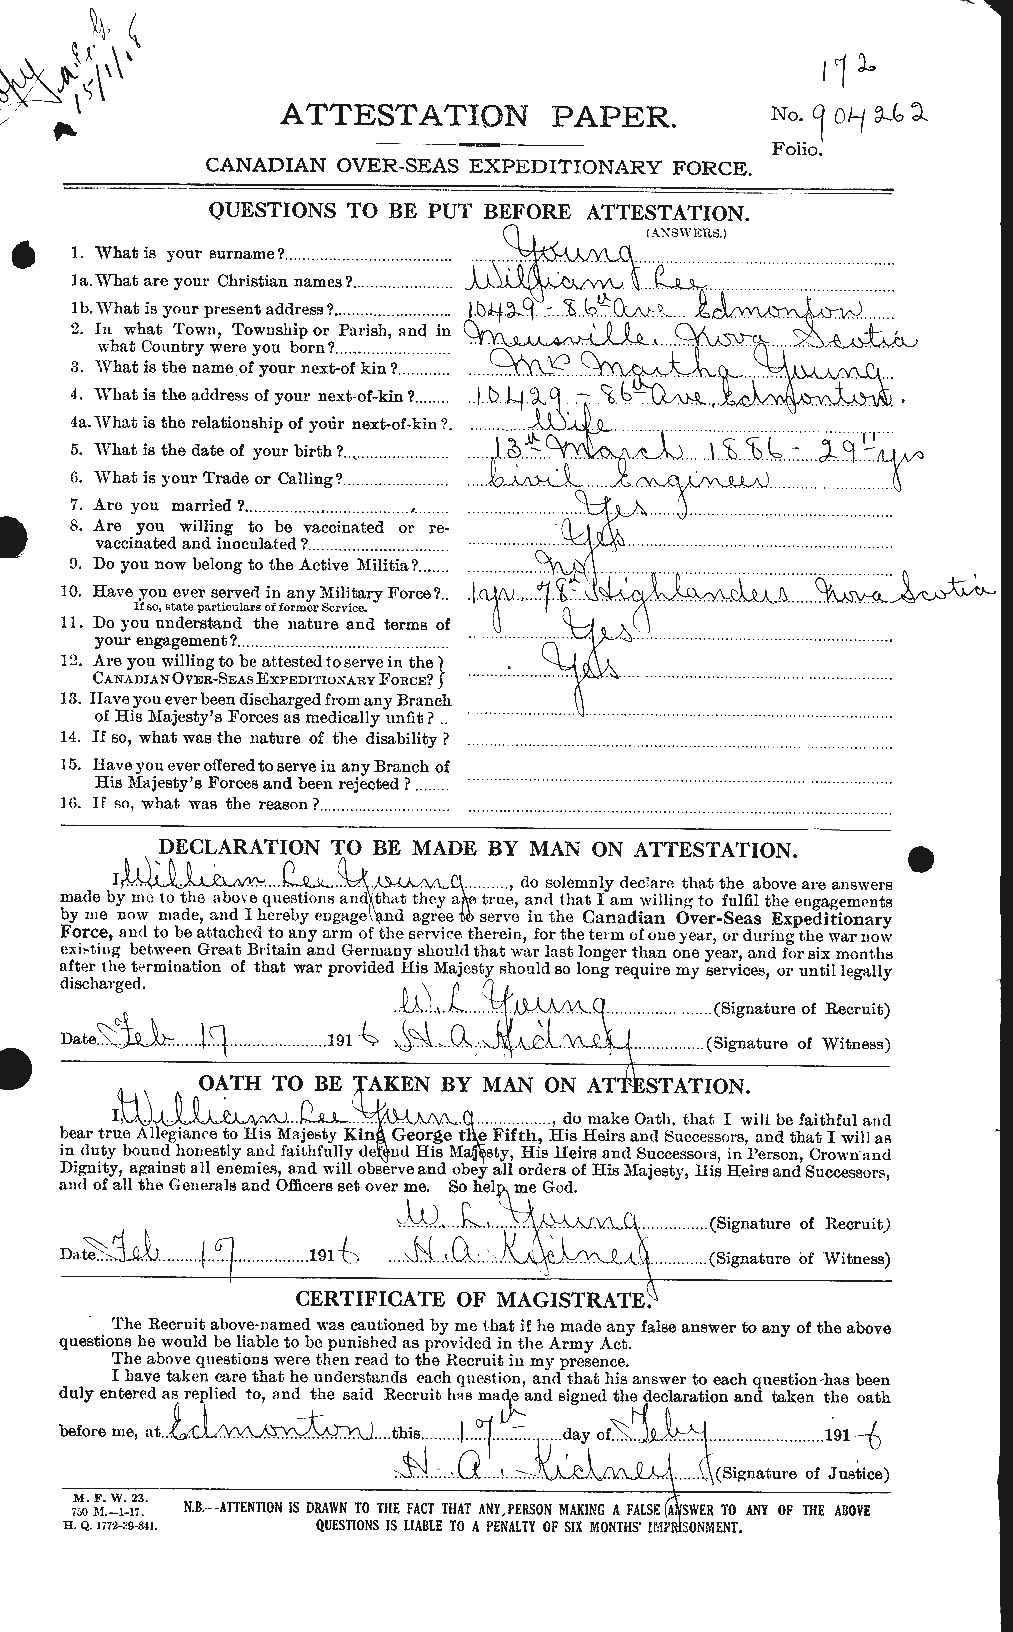 Dossiers du Personnel de la Première Guerre mondiale - CEC 689681a